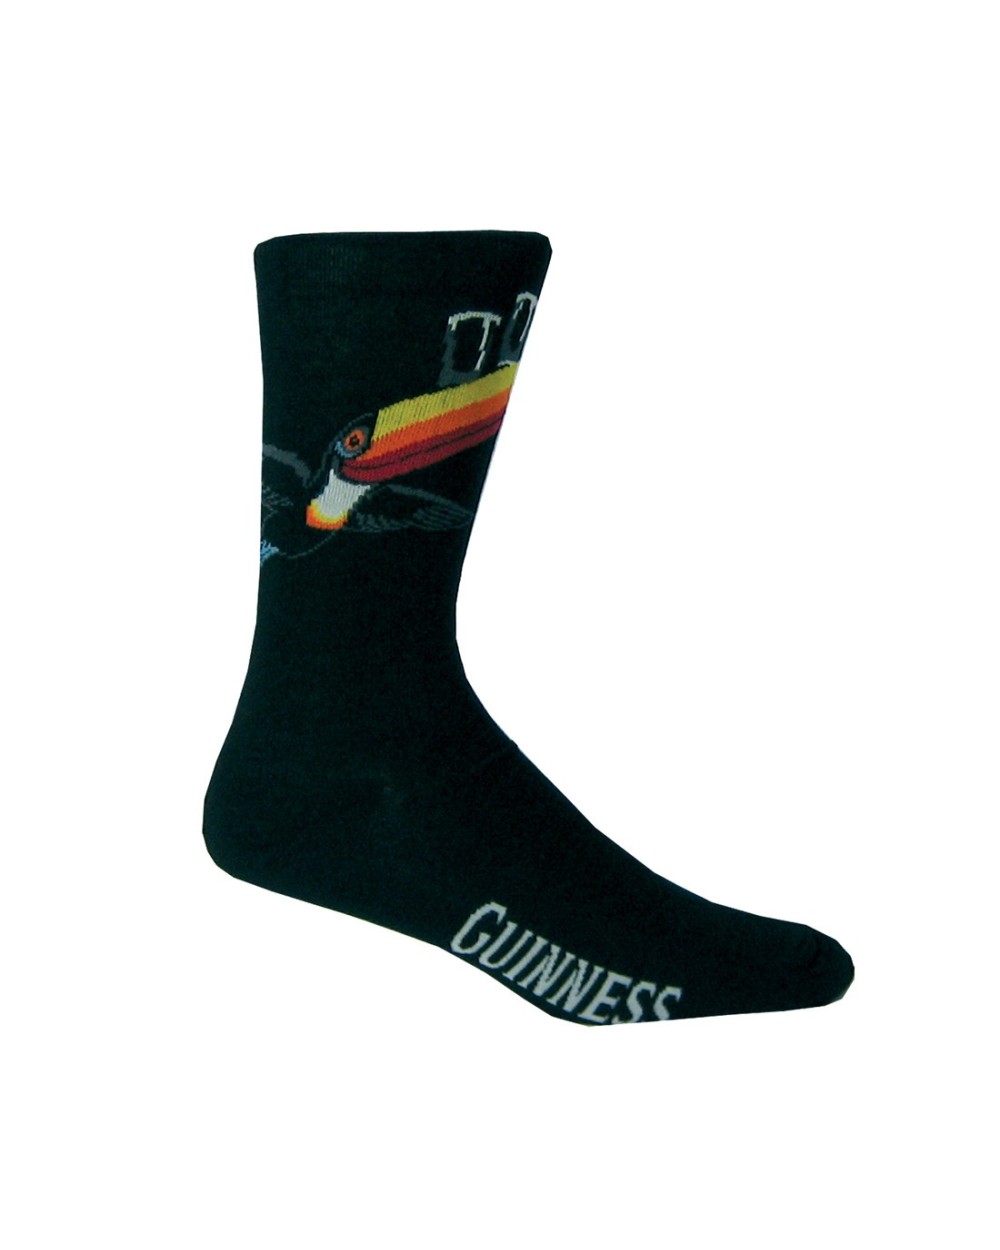 Black Guinness Flying Toucan Socks